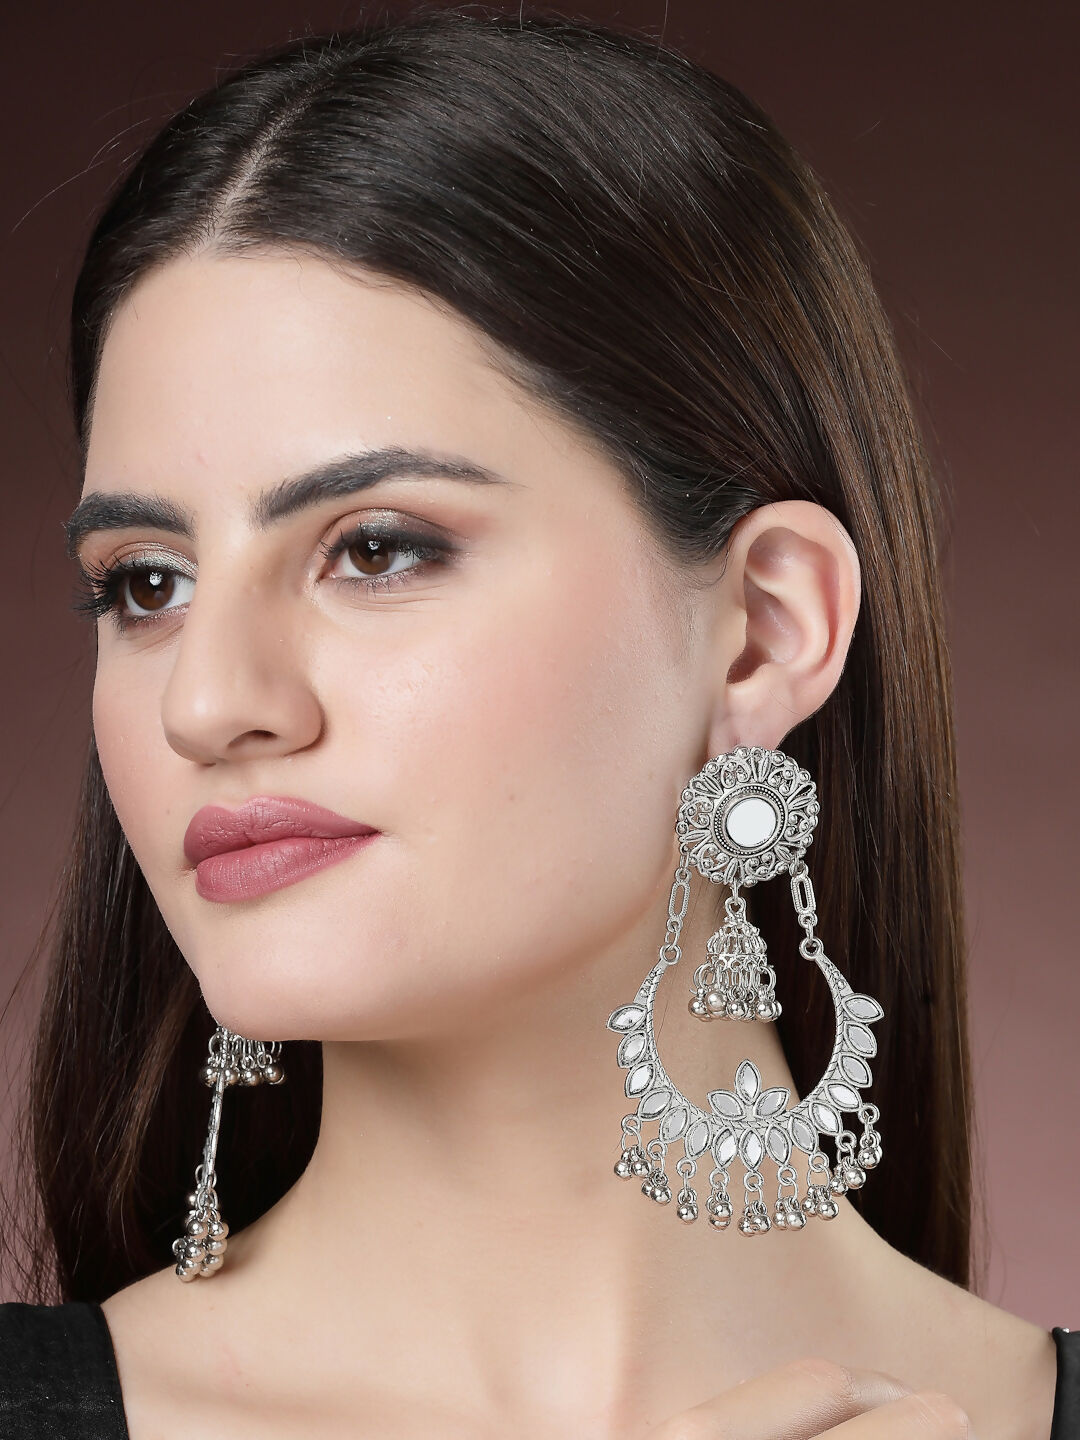 NVR Women's Silver-Plated Mirror Work Oxidised Chandbali Earrings - Distacart